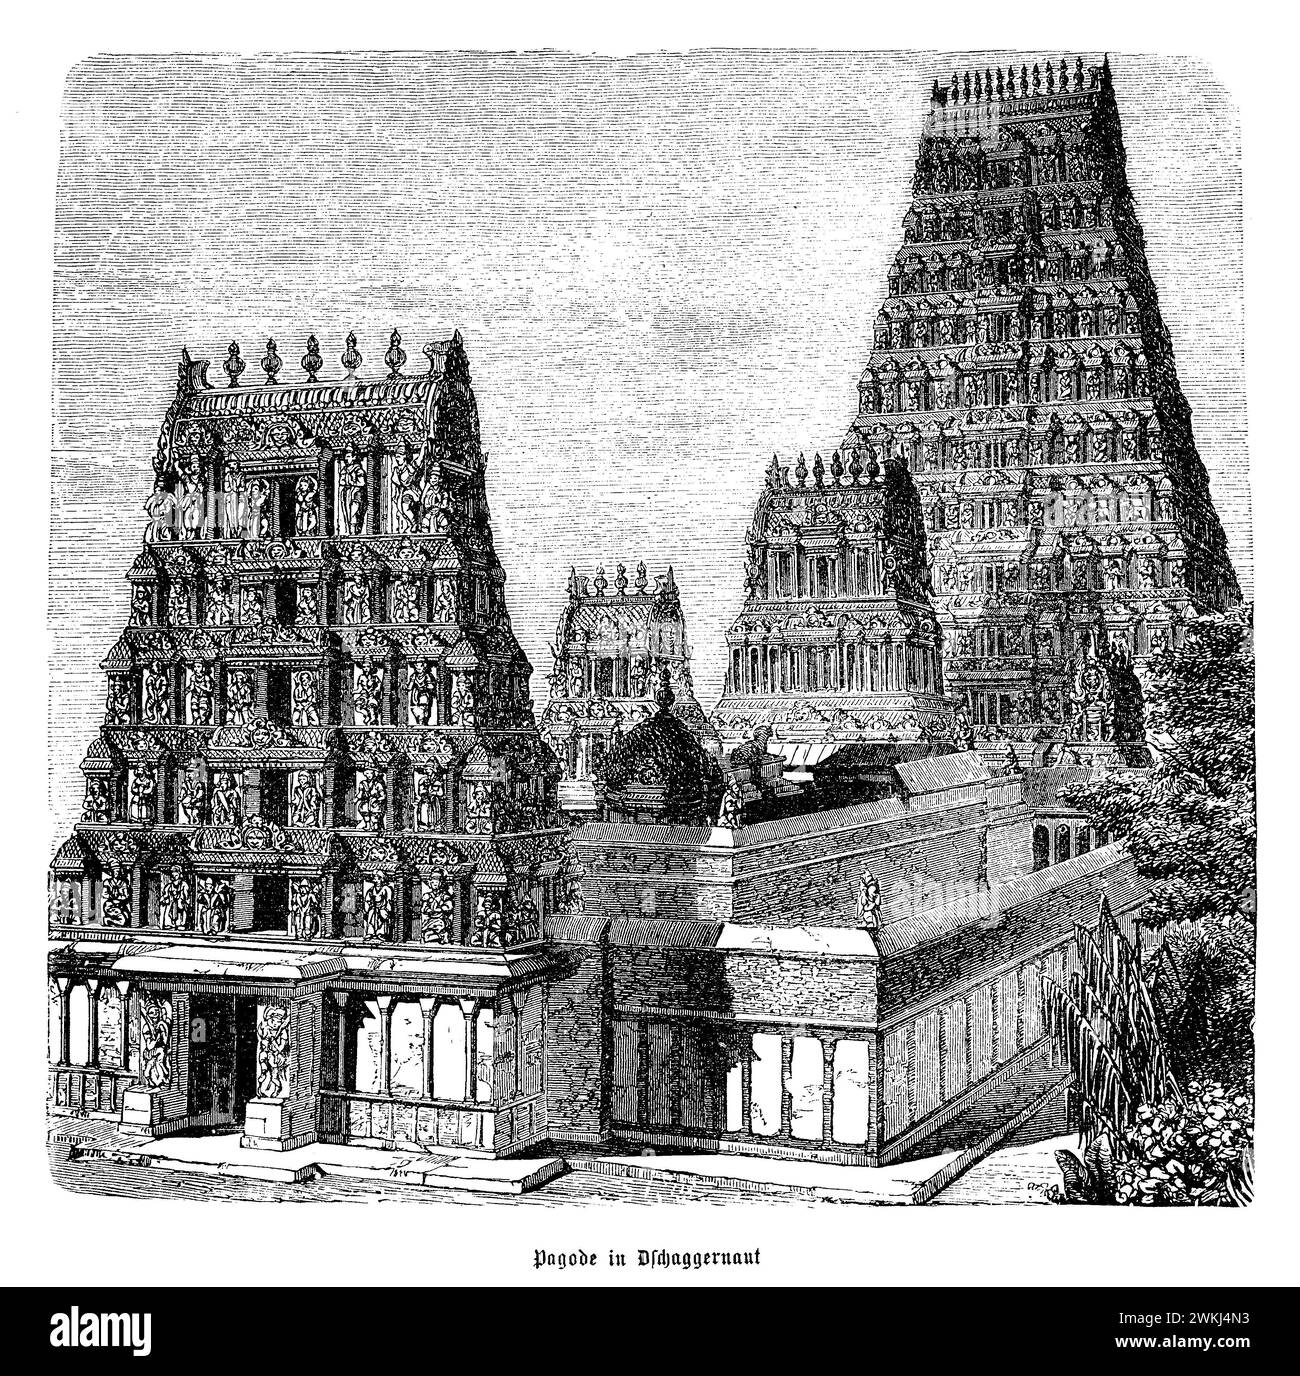 Der Halasuru Someshwara Tempel, eingebettet in die geschäftige Stadt Bangalore, ist ein prächtiges Beispiel für die alte dravidische Architektur. Dieser ehrwürdige Tempel, der Lord Shiva gewidmet ist, mit seiner Geschichte, die in der Chola-Zeit verwurzelt ist, zeigt komplizierte Schnitzereien, prächtige Säulen und einen großen Rajagopuram (Hauptturm). Der Tempelkomplex ist mit verschiedenen Skulpturen und Wandmalereien geschmückt, die Szenen aus der hinduistischen Mythologie darstellen und die künstlerischen Fähigkeiten der Handwerker hervorheben. Im Laufe der Jahrhunderte diente es als spirituelles Zentrum für Gläubige und bot einen friedlichen Rückzugsort inmitten der urbanen Landschaft. Die Stockfoto